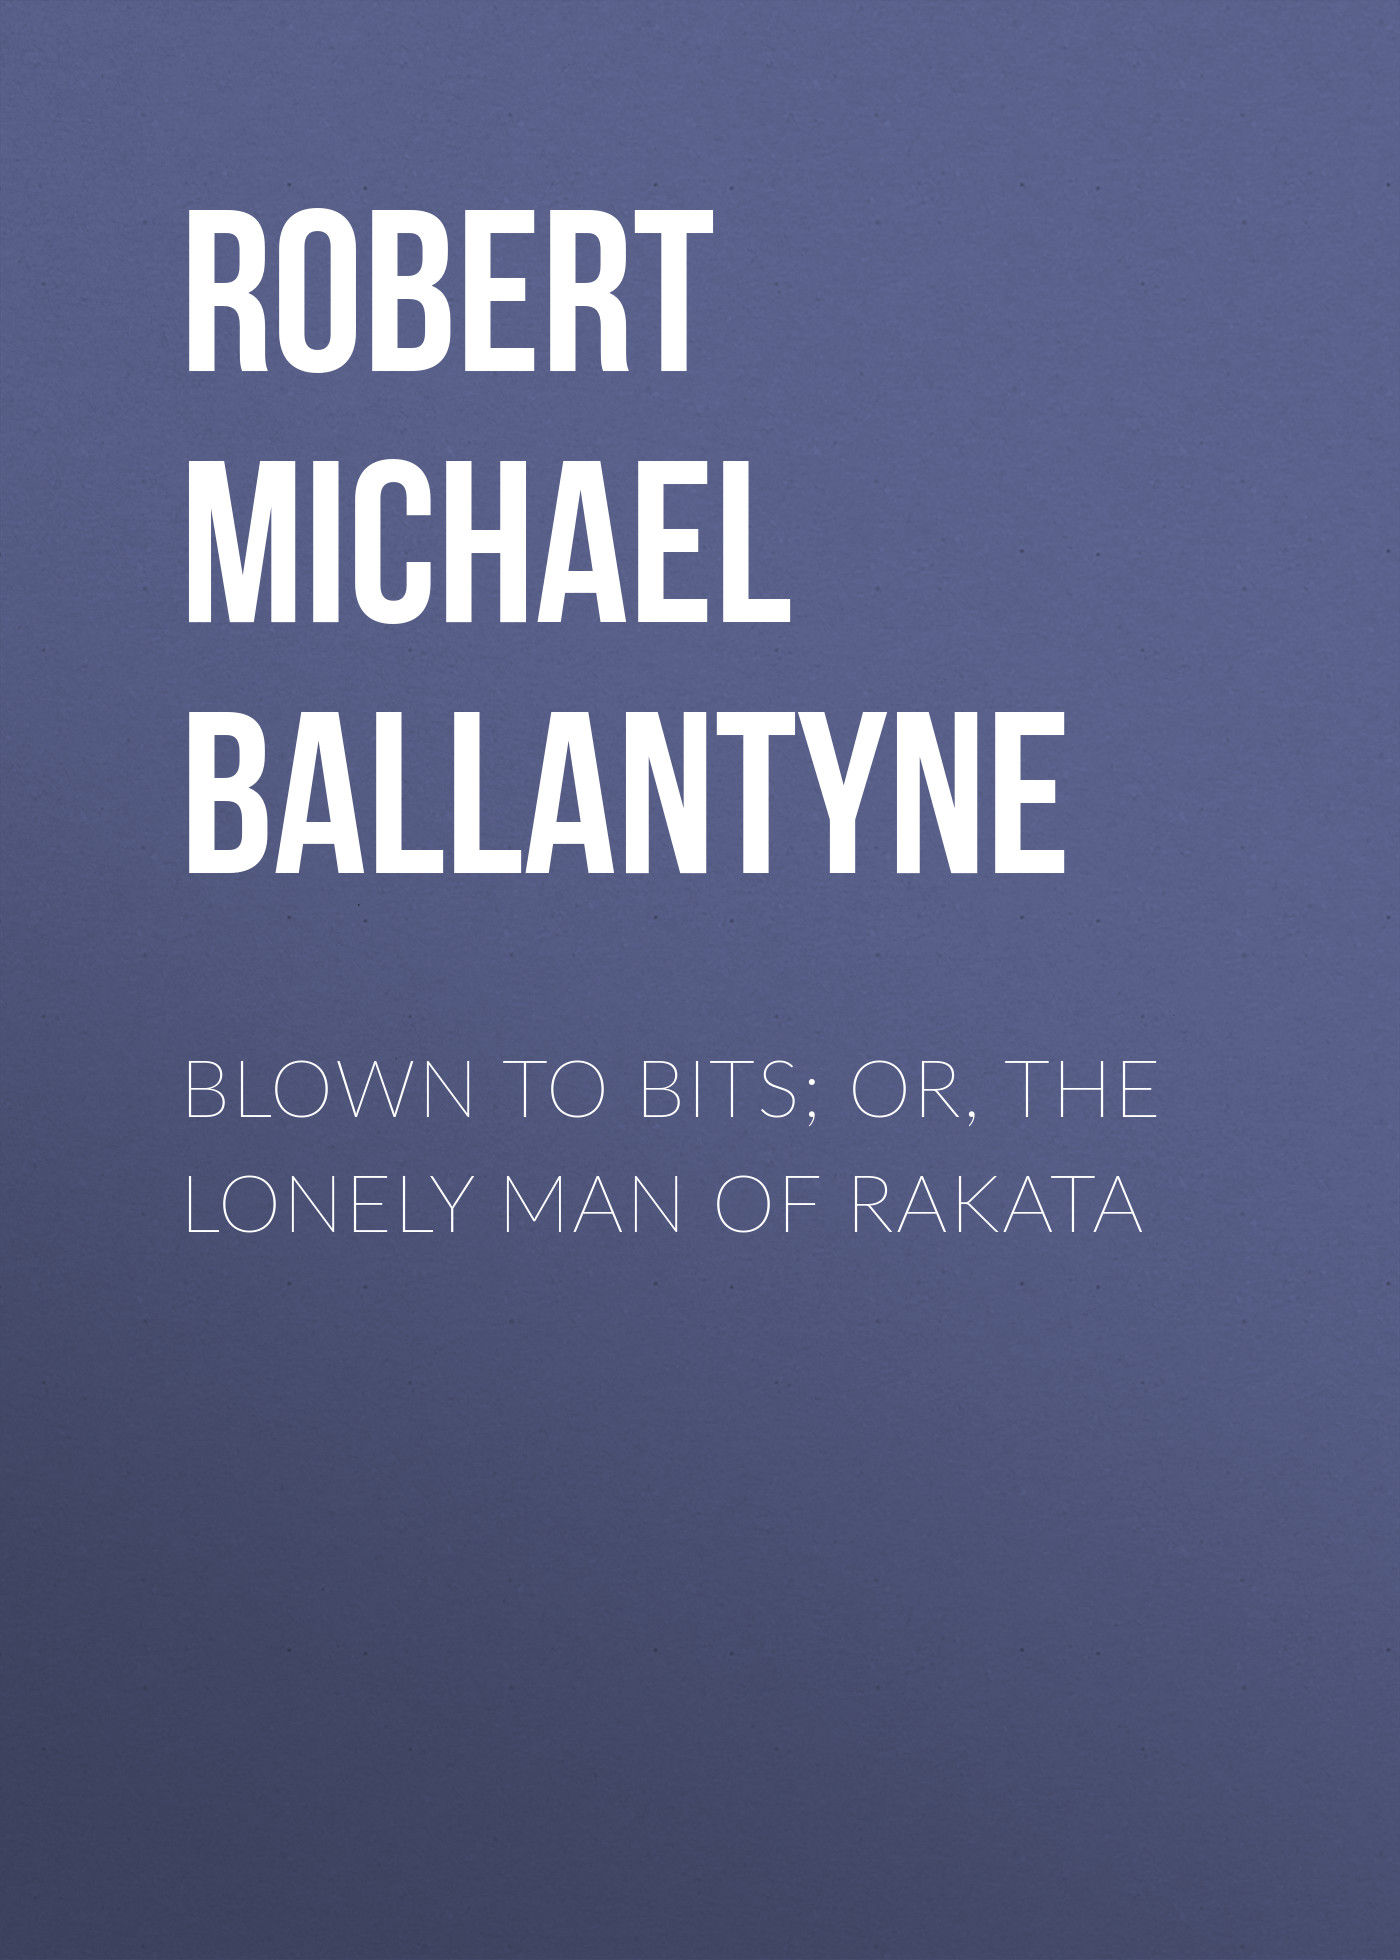 Книга Blown to Bits; or, The Lonely Man of Rakata из серии , созданная Robert Michael Ballantyne, может относится к жанру Зарубежные детские книги, Литература 19 века, Зарубежная старинная литература, Зарубежная классика. Стоимость электронной книги Blown to Bits; or, The Lonely Man of Rakata с идентификатором 36093677 составляет 0 руб.